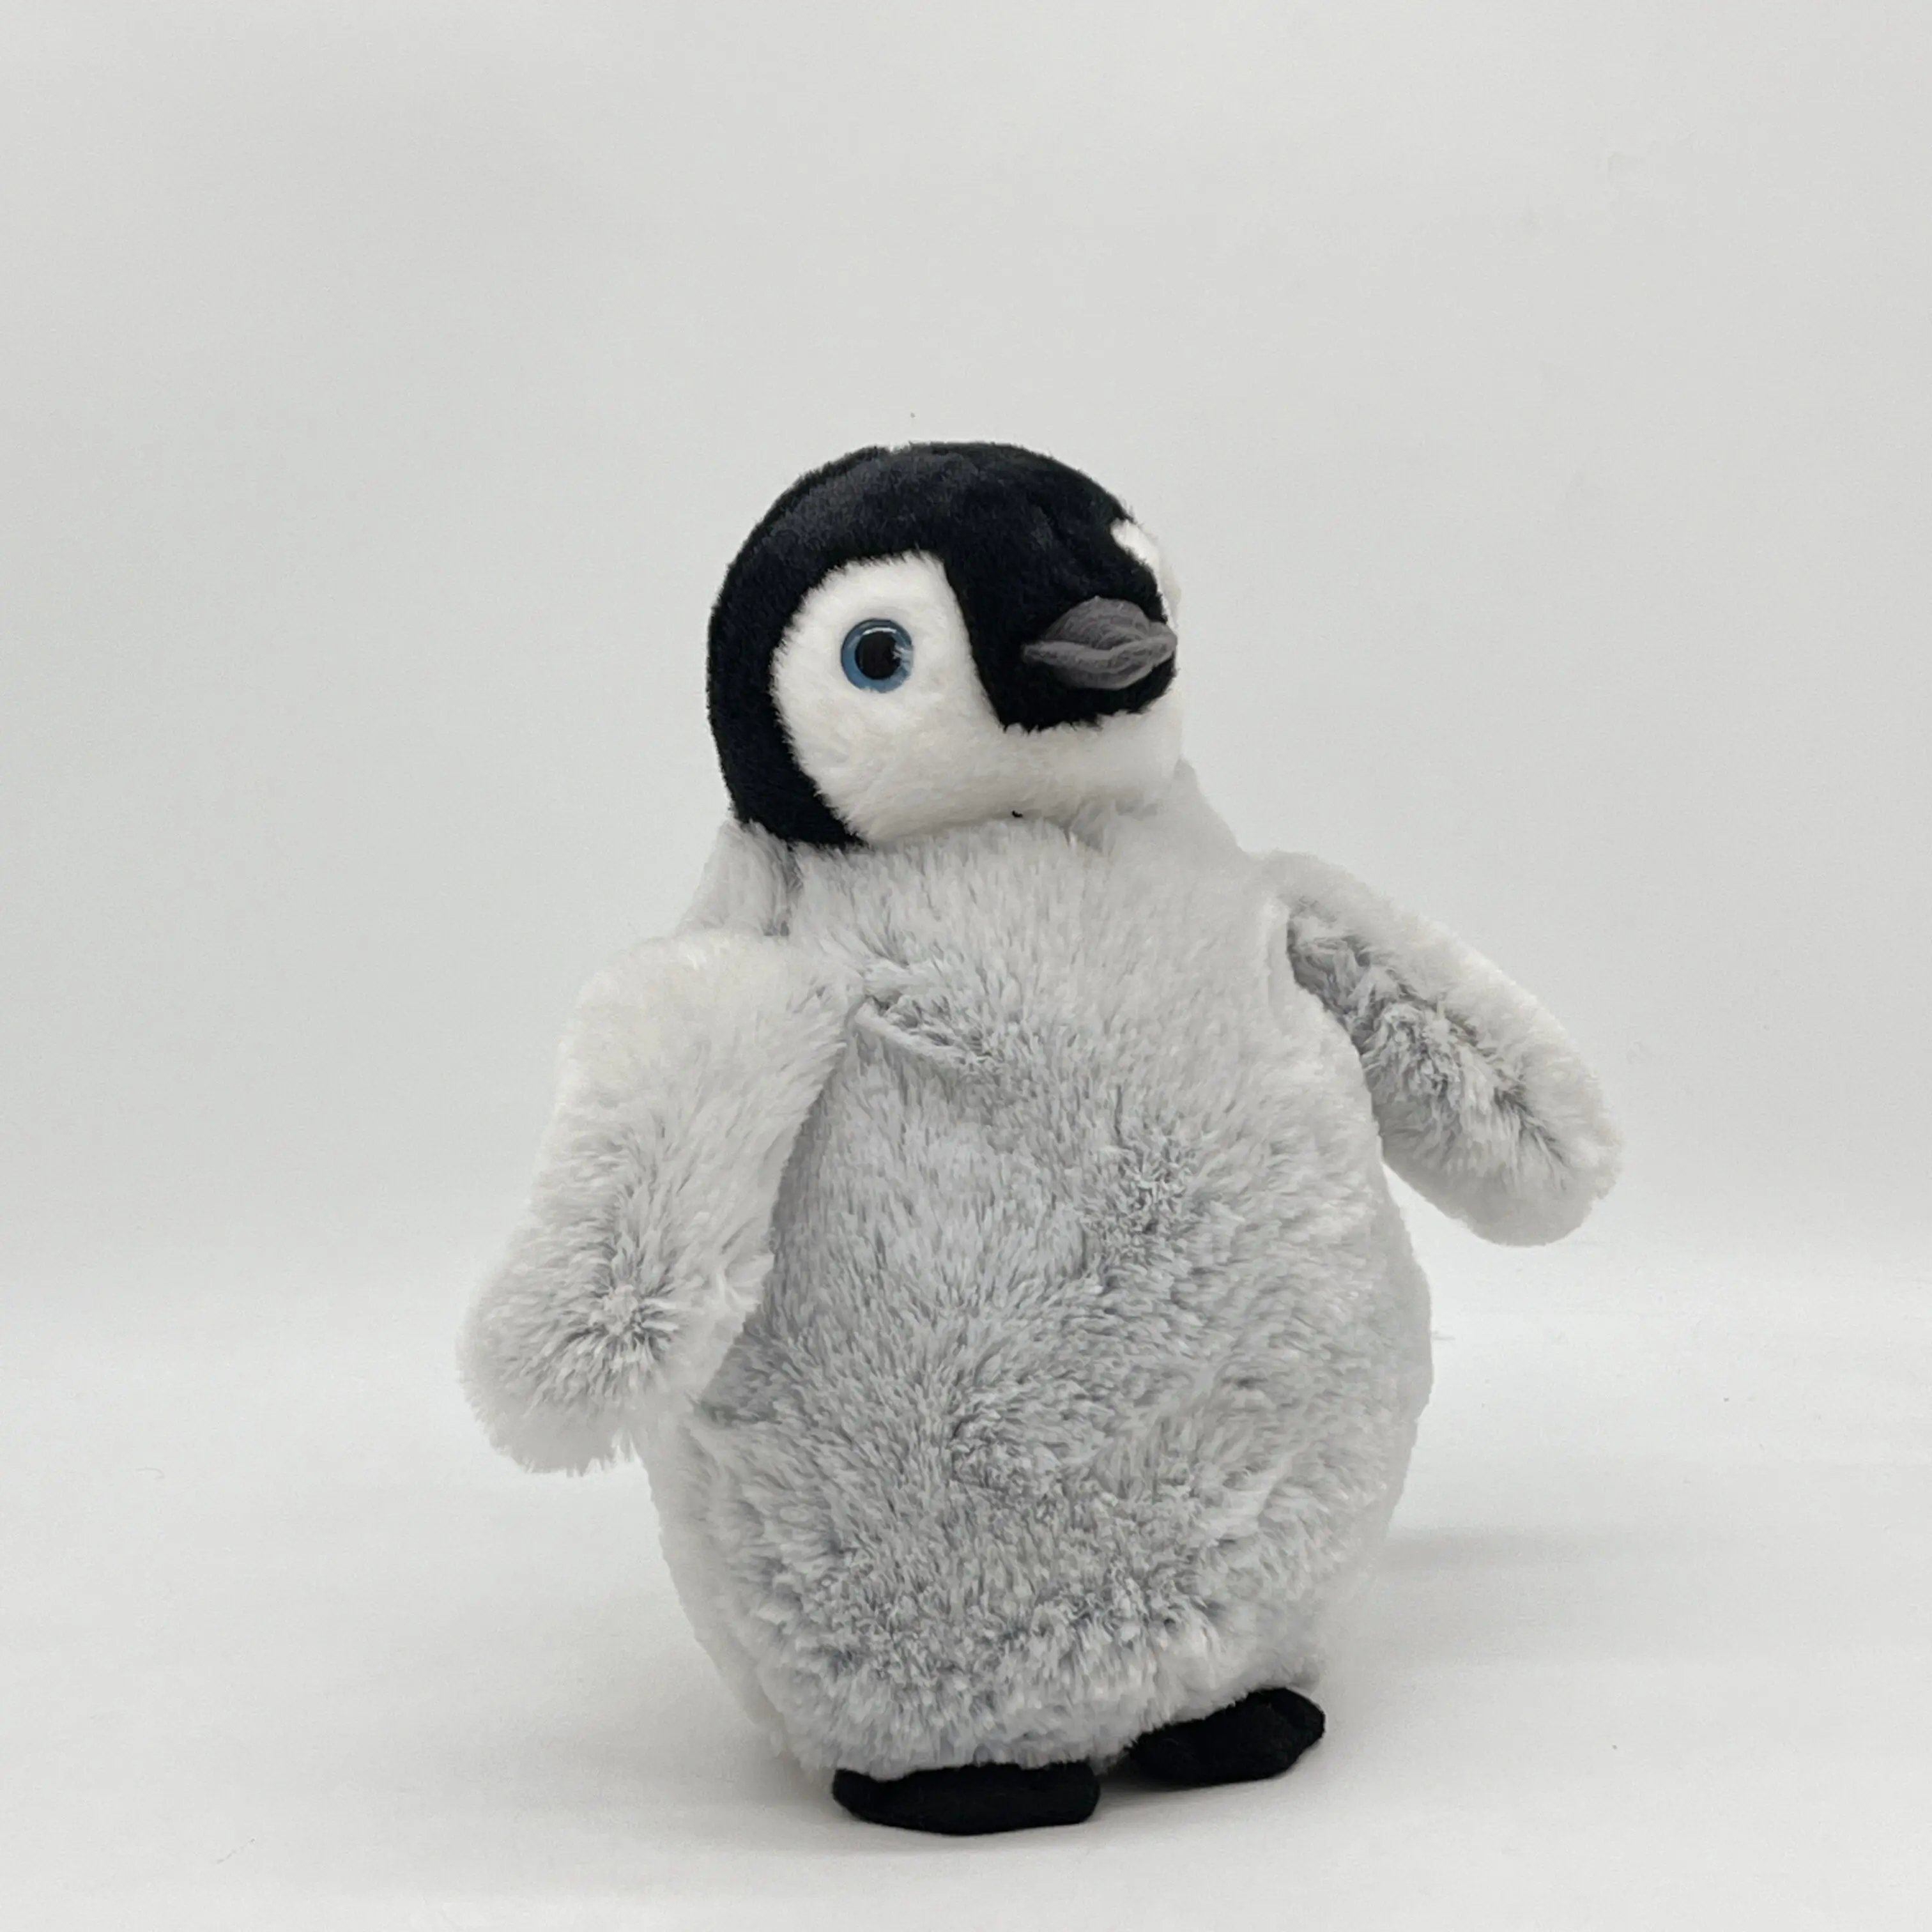 Kustom Kartun Lembut Tertimbang Boneka Hewan Reallife Penguin Mainan Mewah Souvenir untuk Anak-anak